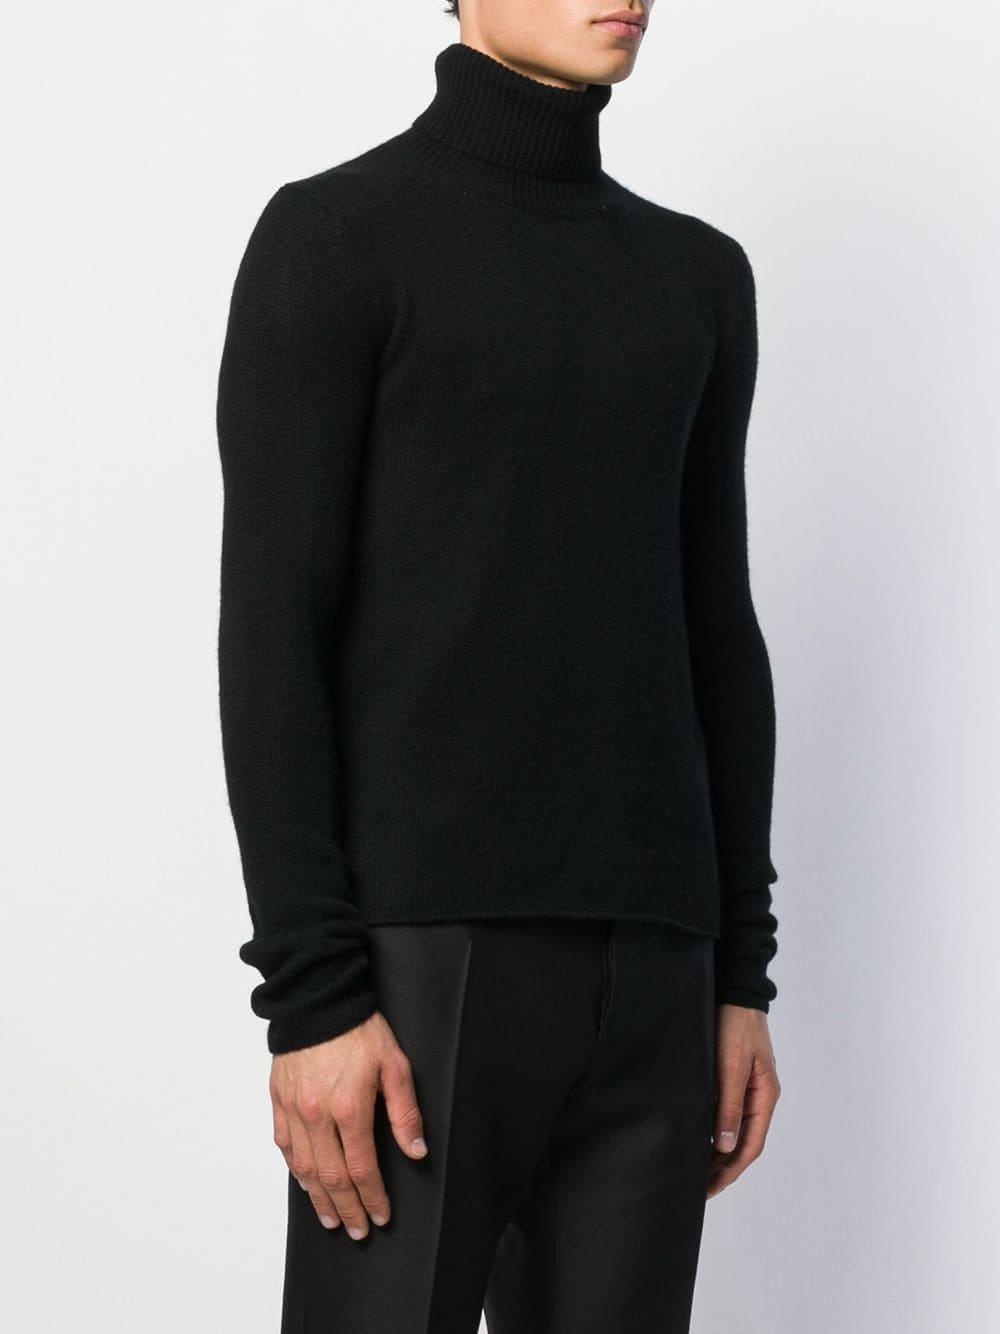 Bottega Veneta Rollneck Cashmere Sweater in Black for Men - Lyst